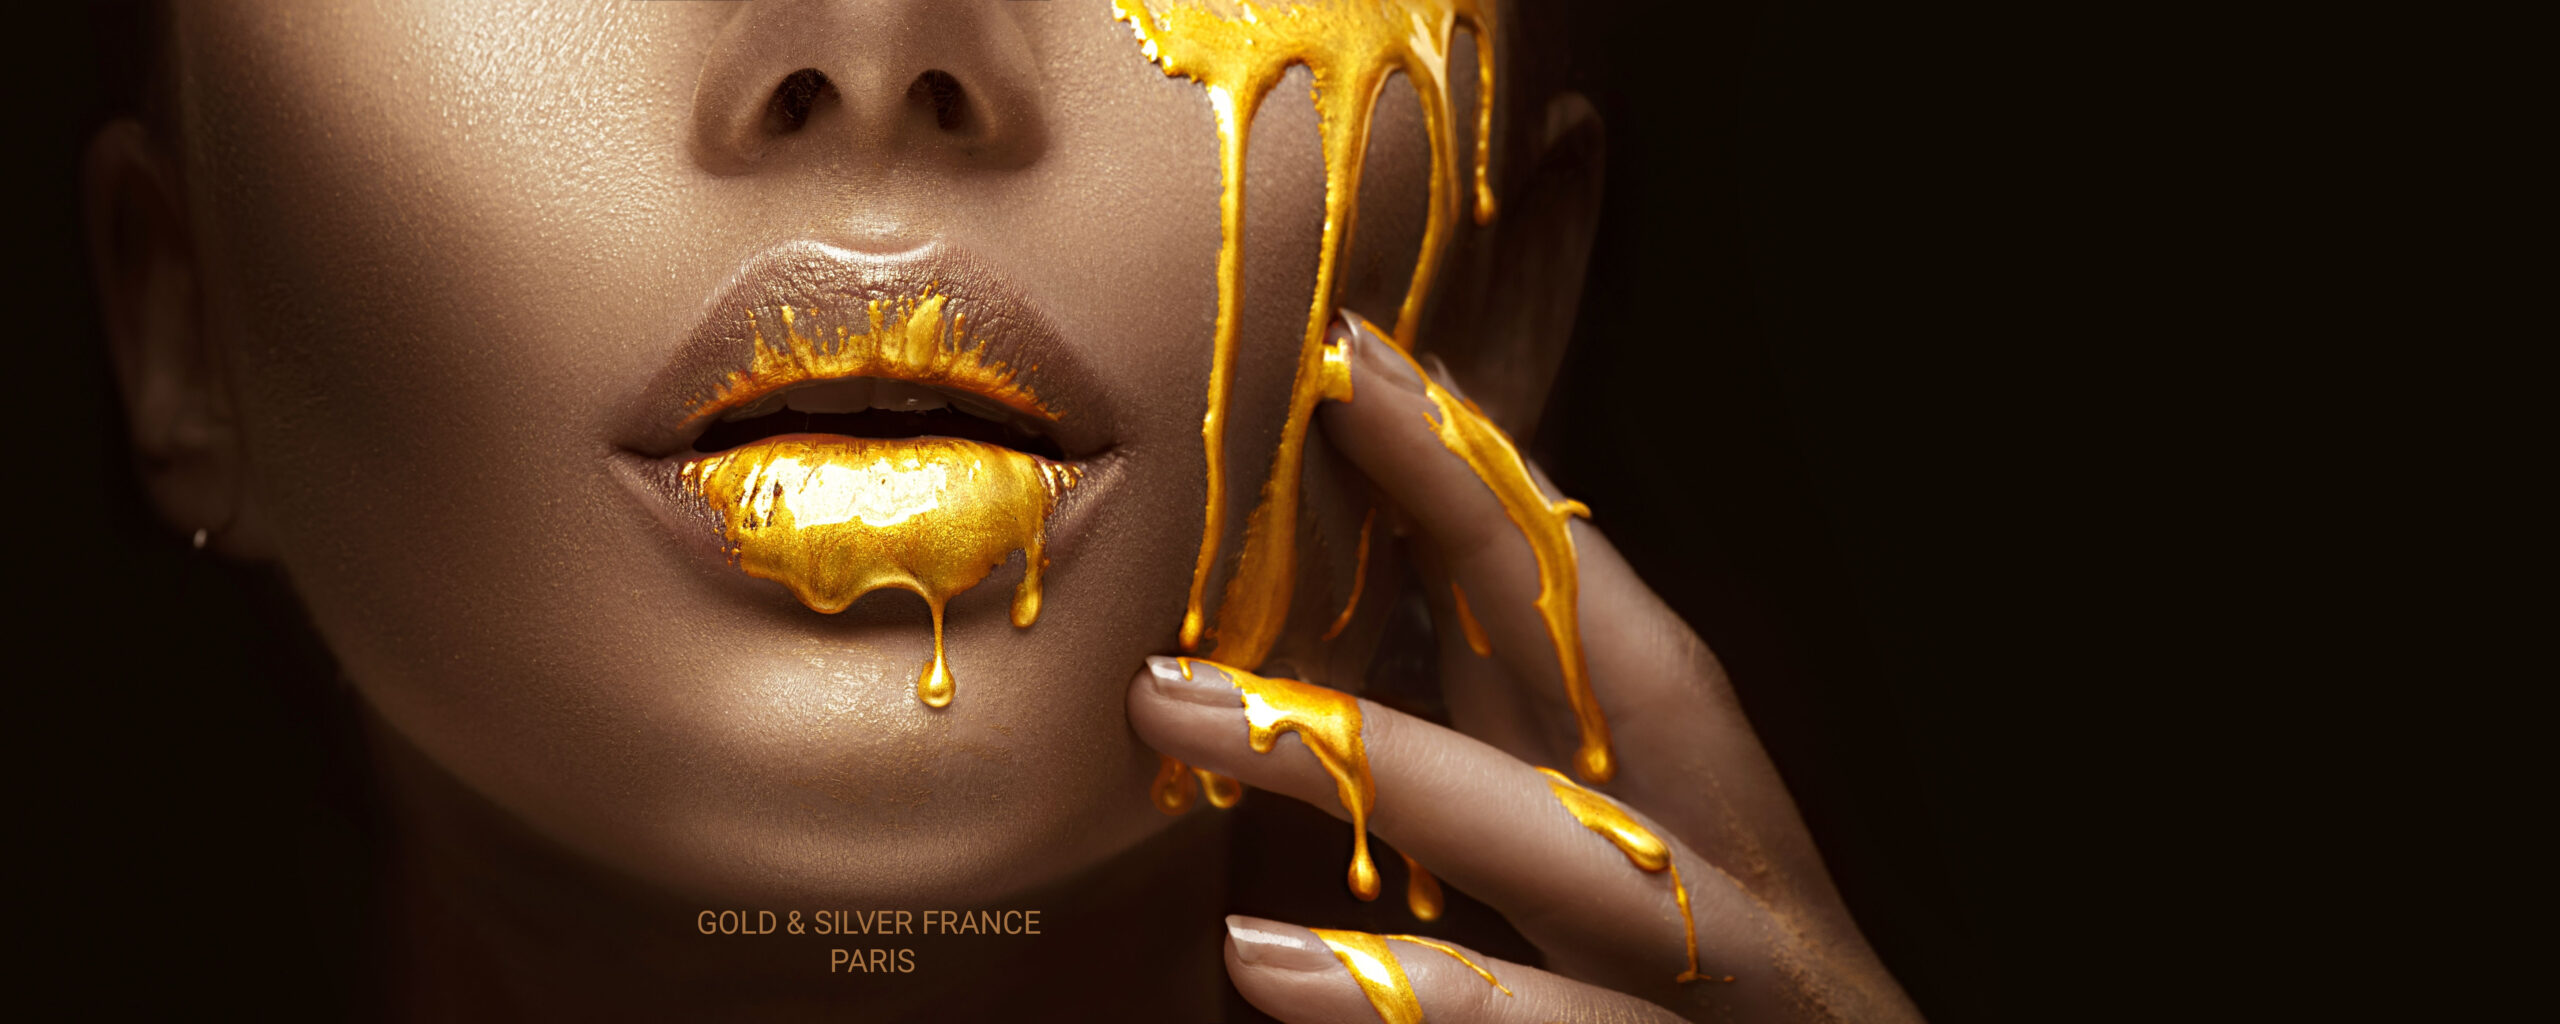 GOLD & SILVER FRANCE PARIS